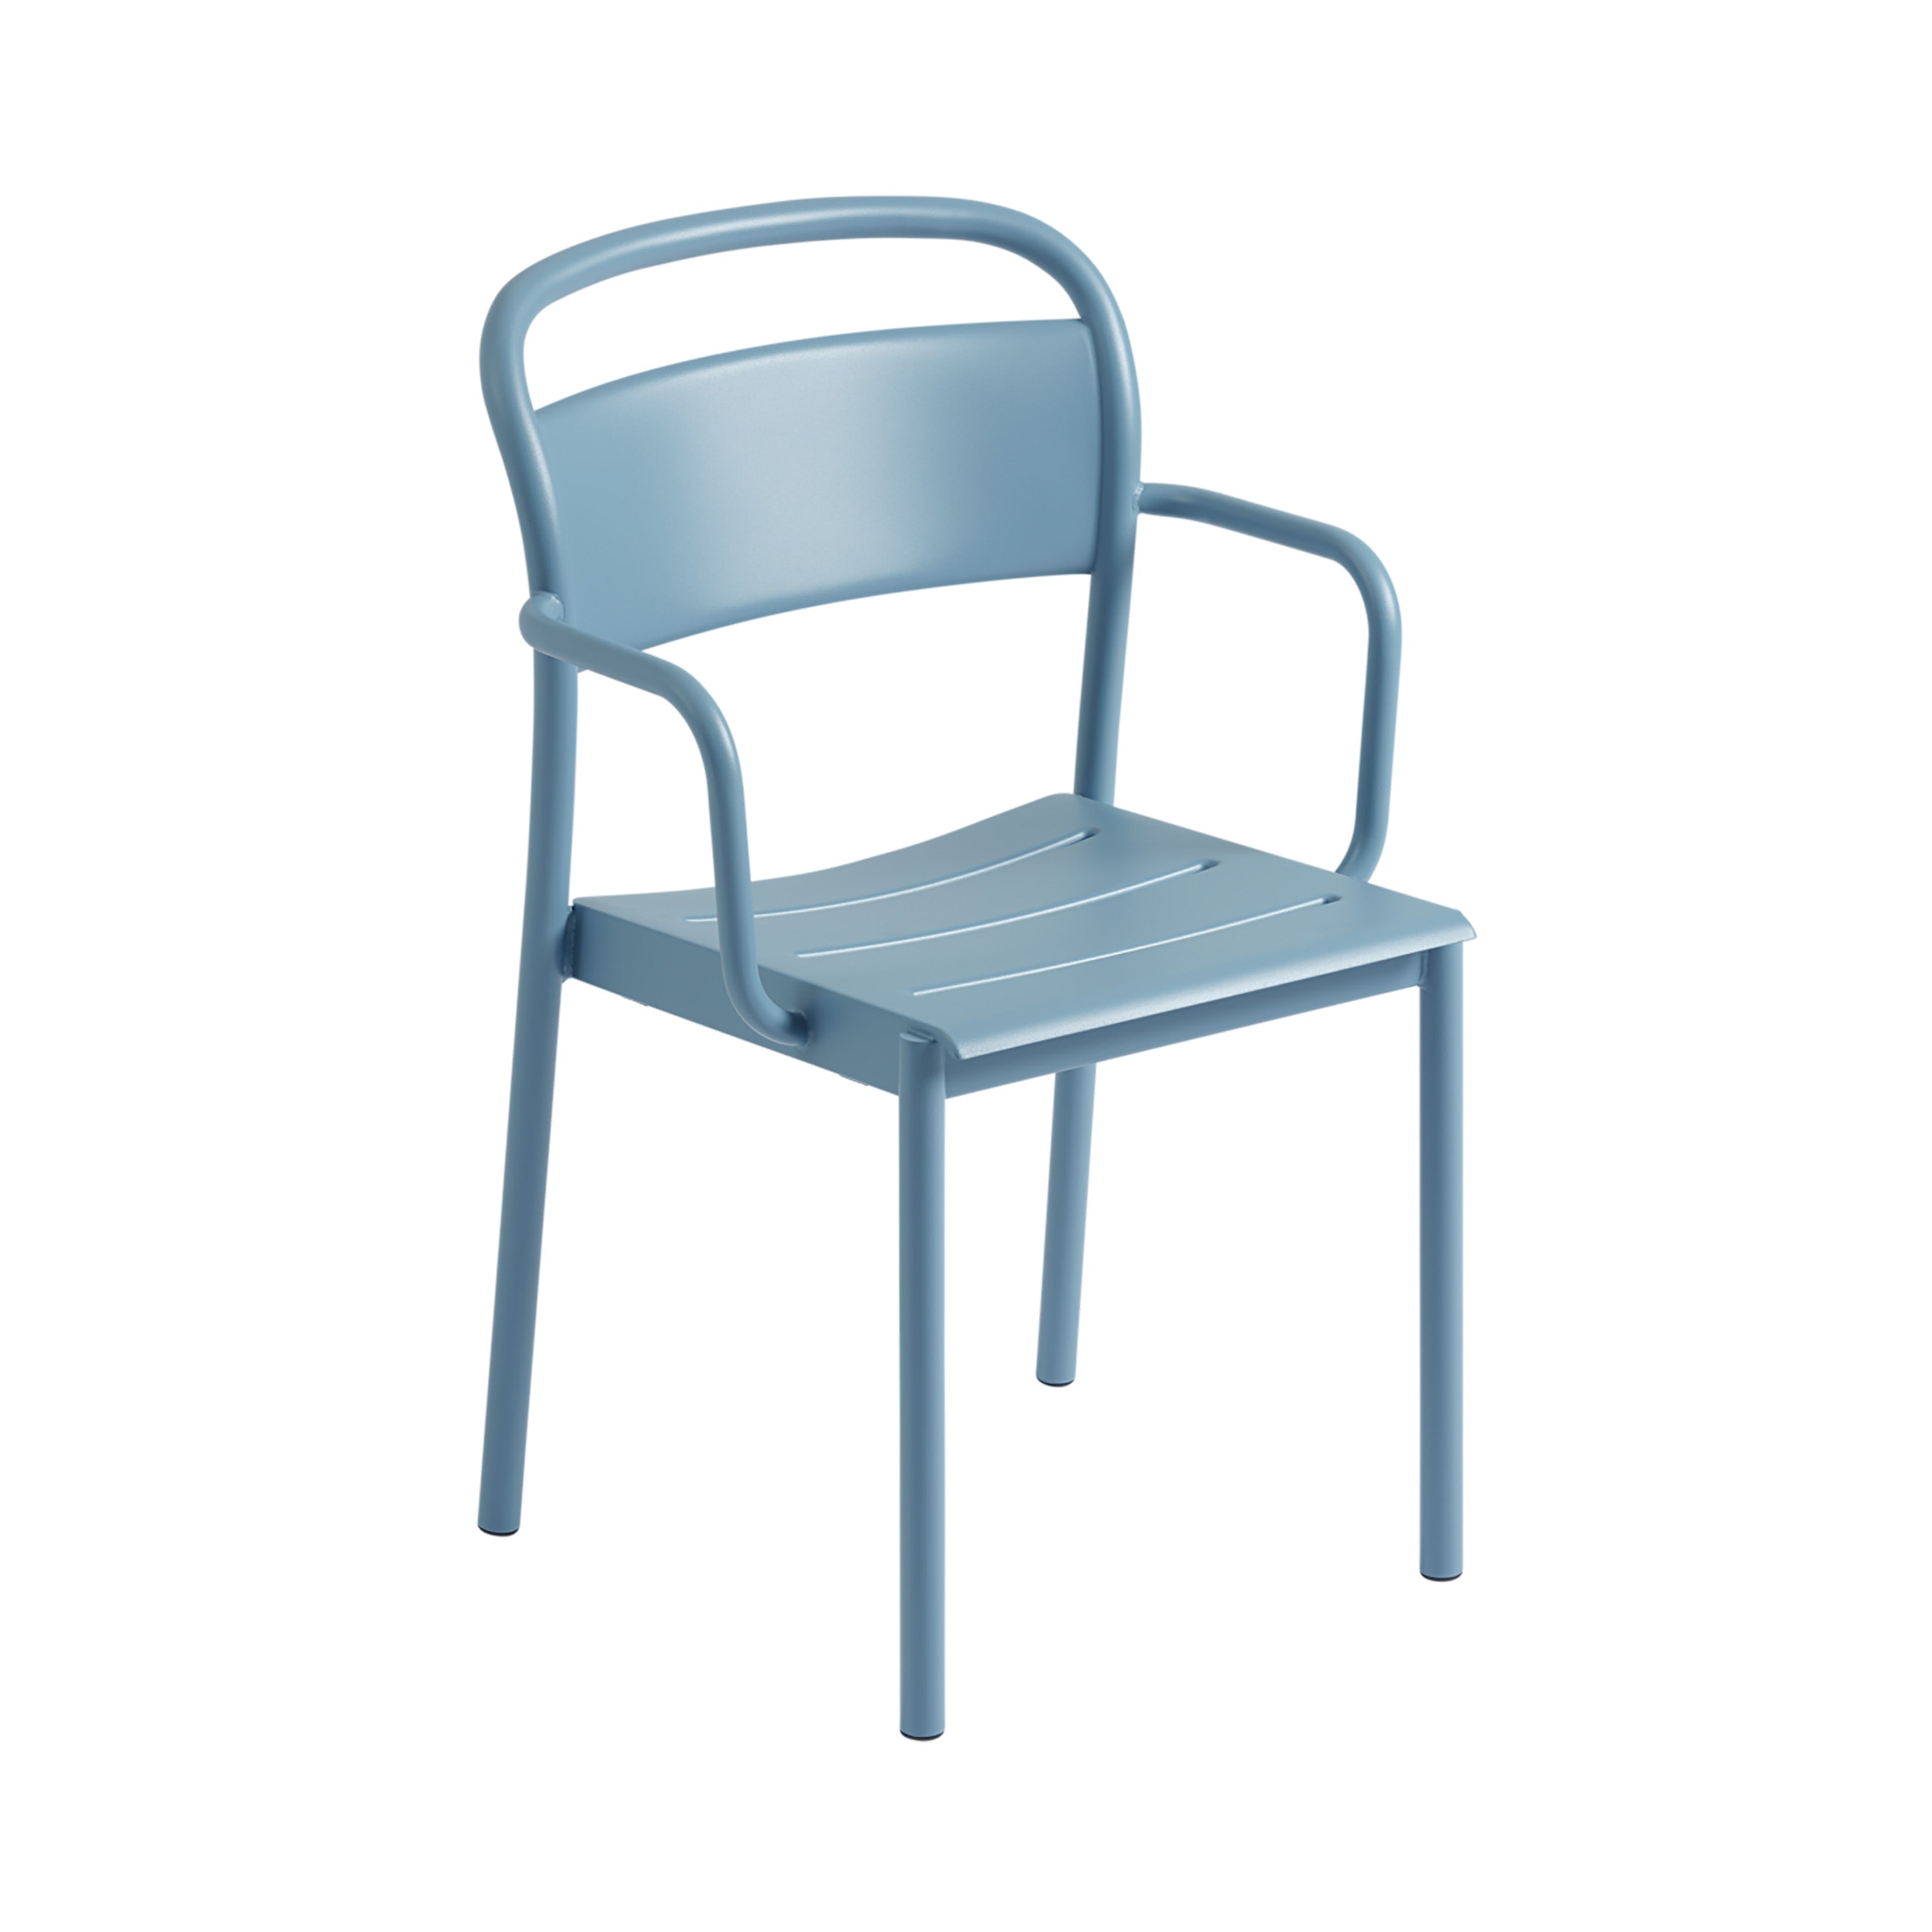 Linear Steel Armchair: Pale Blue